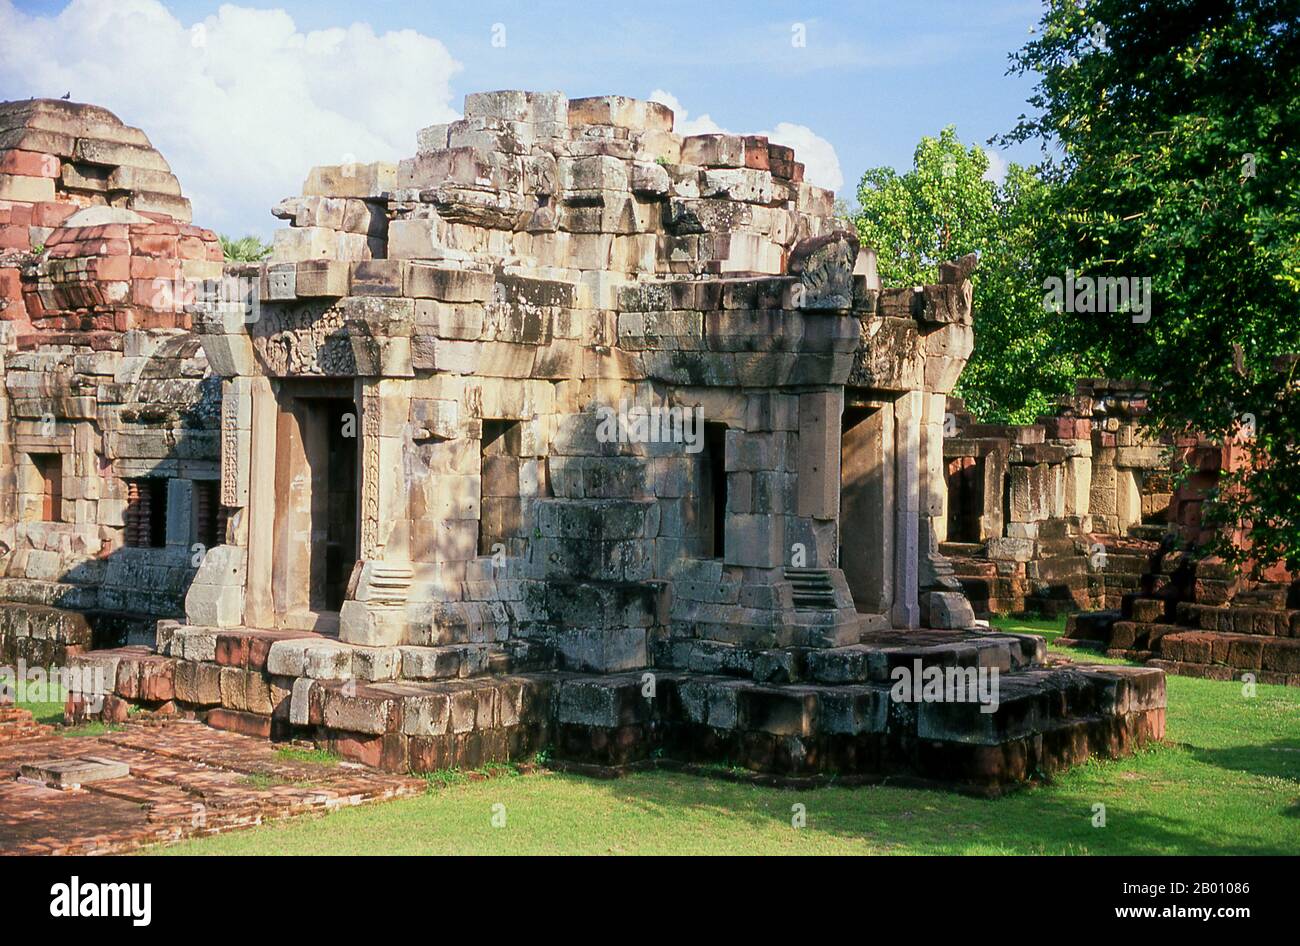 Thailand: Prasat Meuang Phanomwan, Nakhon Ratchasima Provinz, Nordostthailand. Das Khmer-Heiligtum von Prasat Meuang Phanomwan wurde während der 10th und 11th Jahrhunderte errichtet und war ursprünglich ein Hindu-Tempel, der Lord Shiva gewidmet wurde. Prasat Phanom Wan liegt zwischen Khorat und Phimai und obwohl nicht so beeindruckend wie Prasat hin Phimai ist es immer noch ein sehr guter Khmer Ort. Die früheste Inschrift hier gefunden stammt aus dem Jahr 891 CE, die mit der Herrschaft von Yasovarman fällt. Weitere Teile des Tempels wurden während der Herrschaft Suryavarman I im 11th. Jahrhundert hinzugefügt. Stockfoto